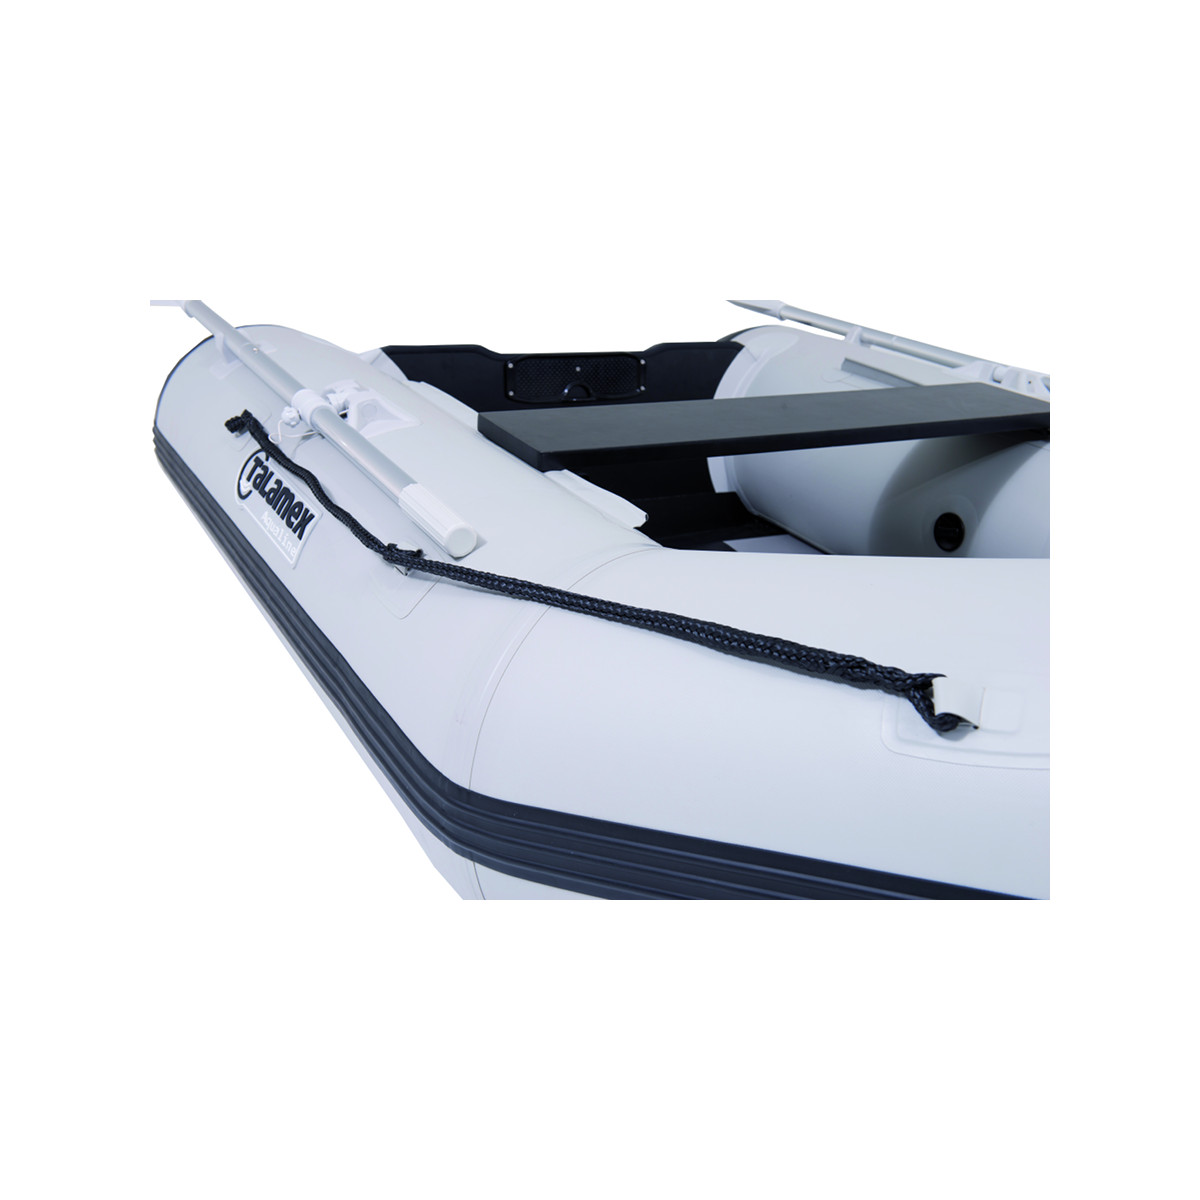 Talamex Aqualine QLX270 opblaasbare rubberboot QLX270 met aluminium bodem, lengte 2,70m, grijs